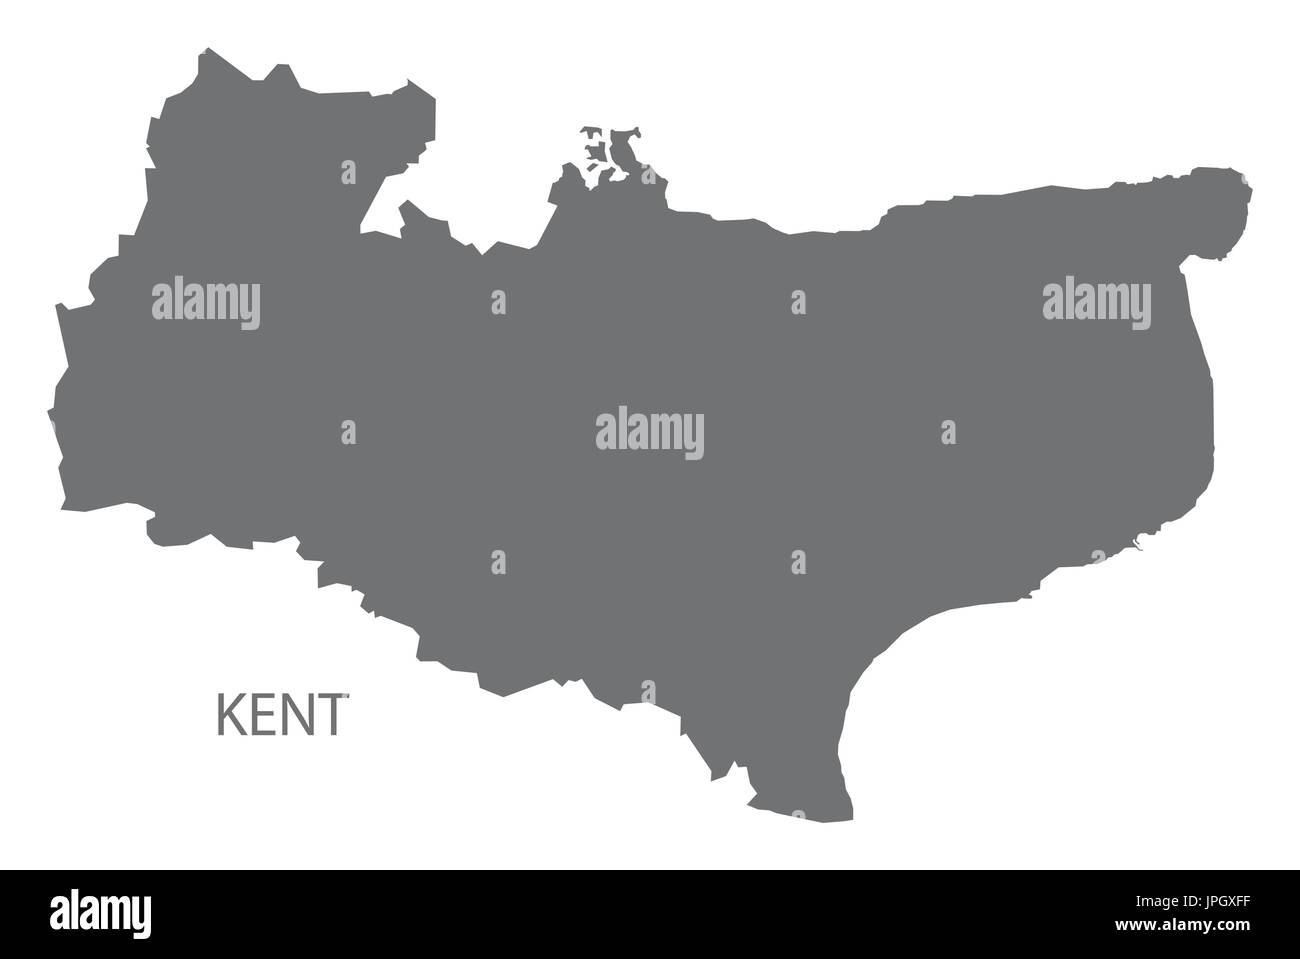 Kent county Karte England UK grau Abbildung Silhouette Form Stock Vektor